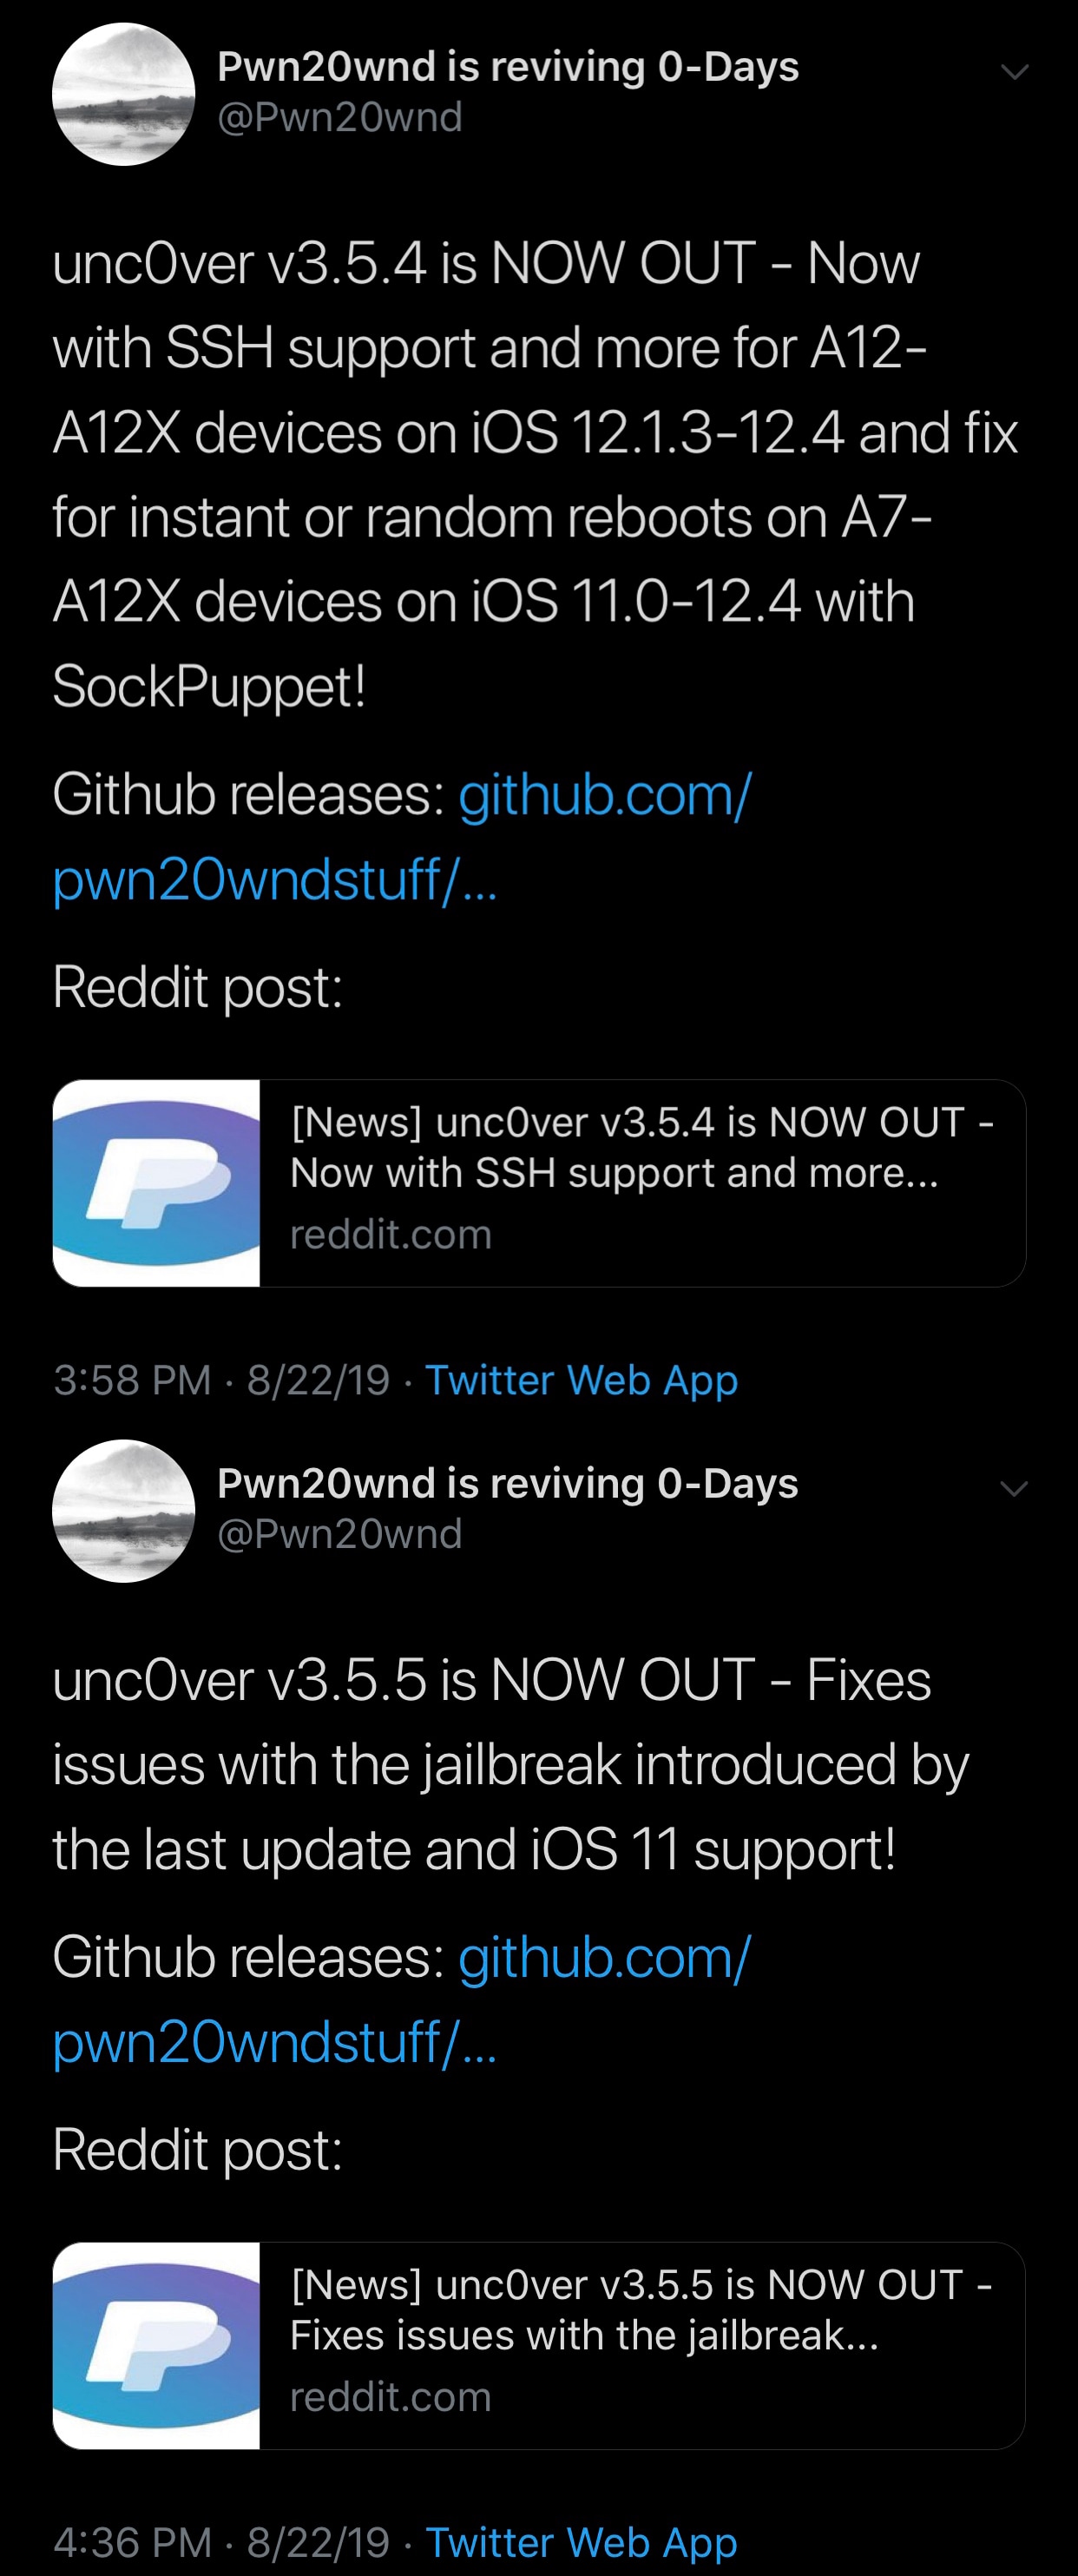 Unc0ver v3.5.5 выпущен с поддержкой SSH на устройствах A12 (X) под iOS 12.1.3-12.4, исправлены ошибки 2